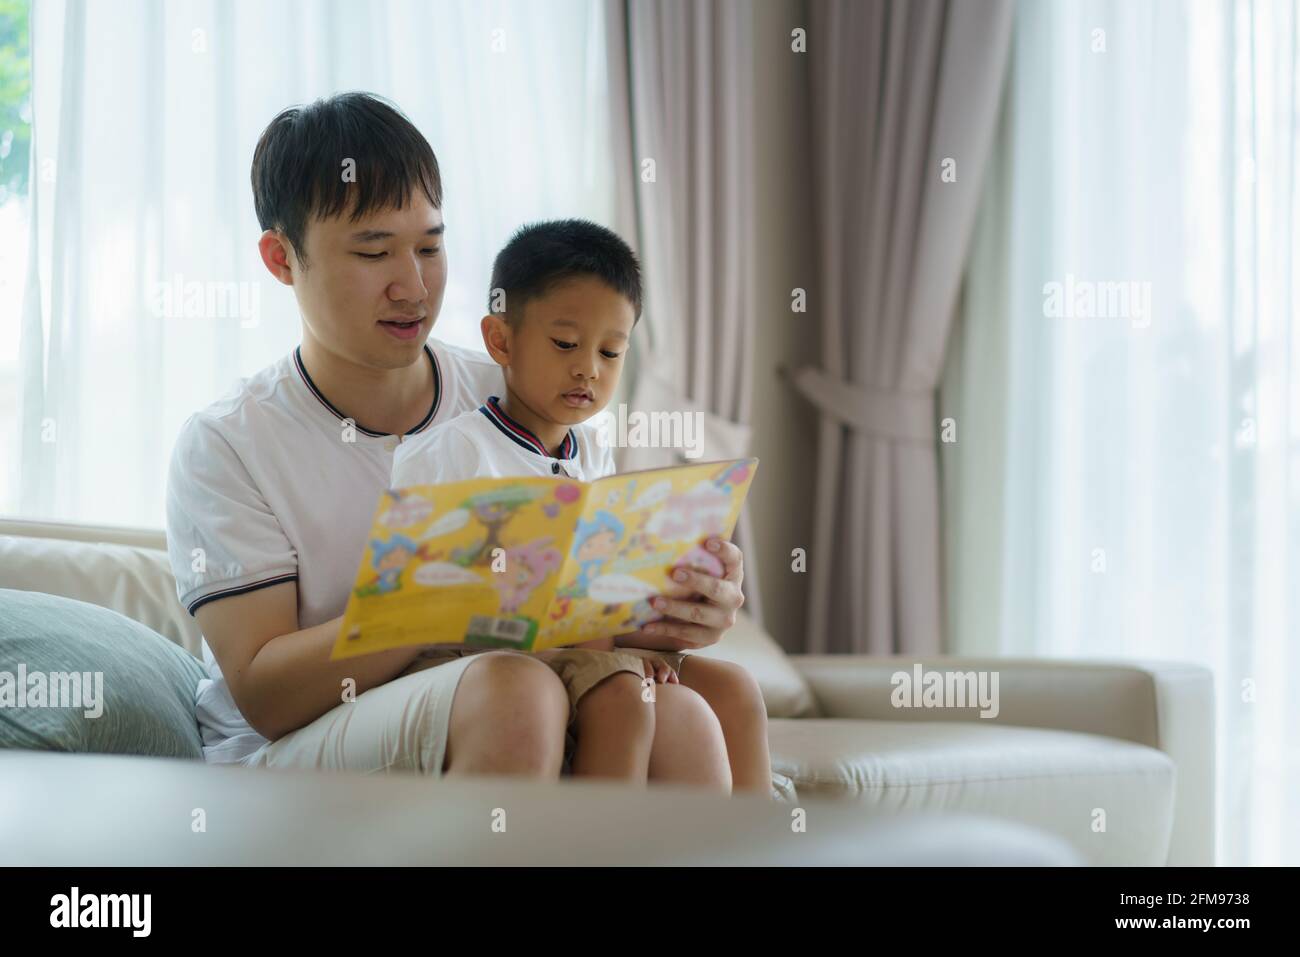 Der asiatische Vater hält ein Buch, um seinen Kindern das Lesen auf dem Sofa im Wohnzimmer beizubringen, Väter interagieren den ganzen Tag mit ihren Kindern. Stockfoto